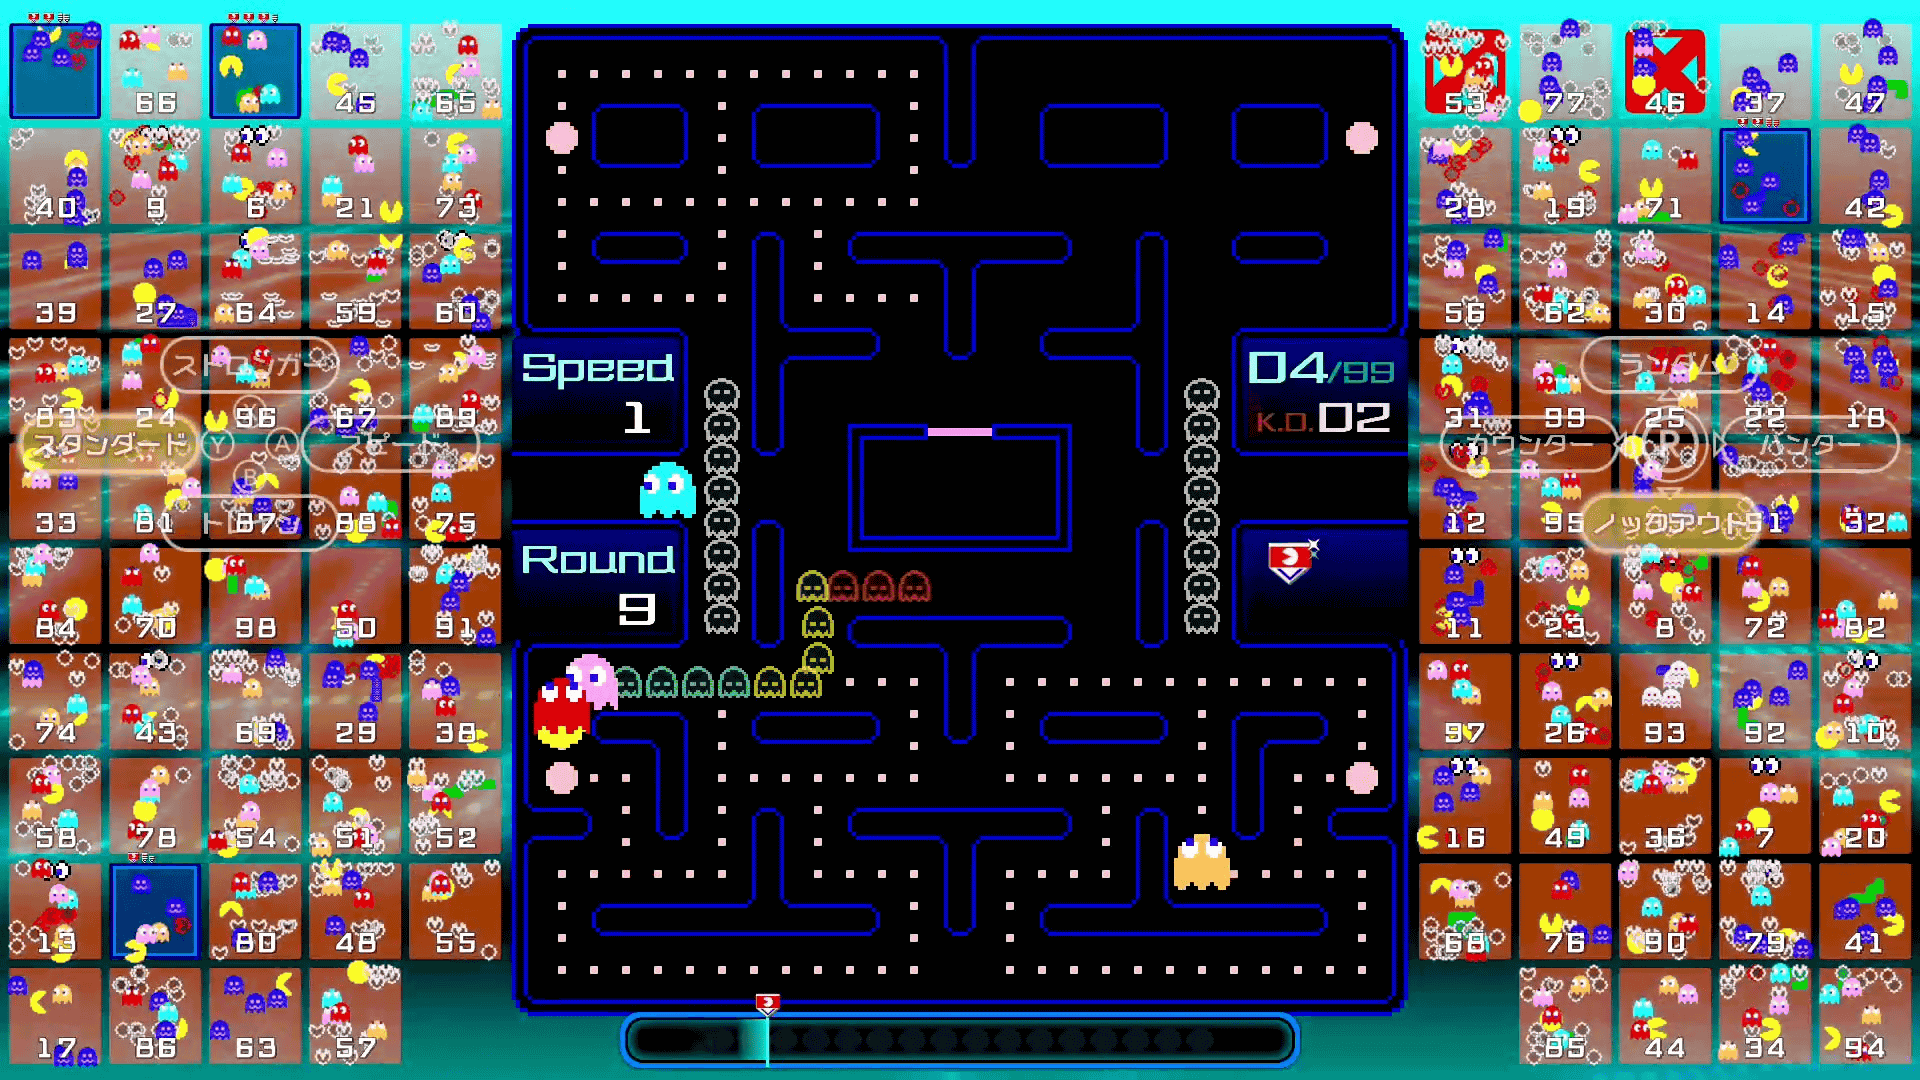 O battle royale chegou ao Pac-Man: nova versão do jogo coloca 99 jogadores  online na mesma partida - Multimédia - SAPO Tek